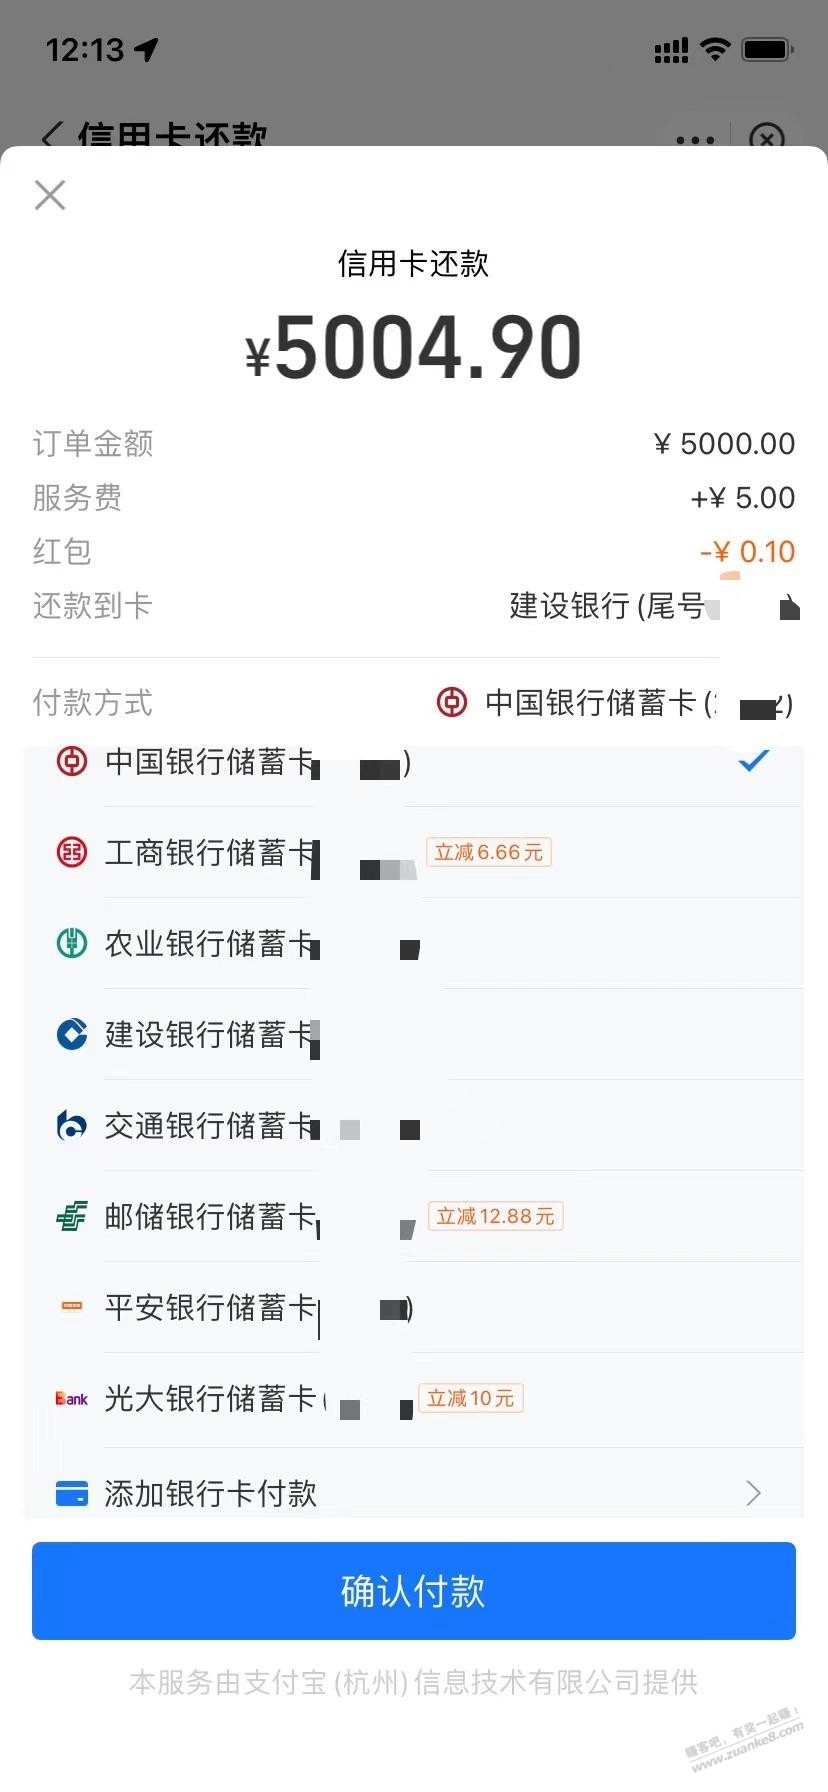 xyk还款优惠工商三次6.66-惠小助(52huixz.com)